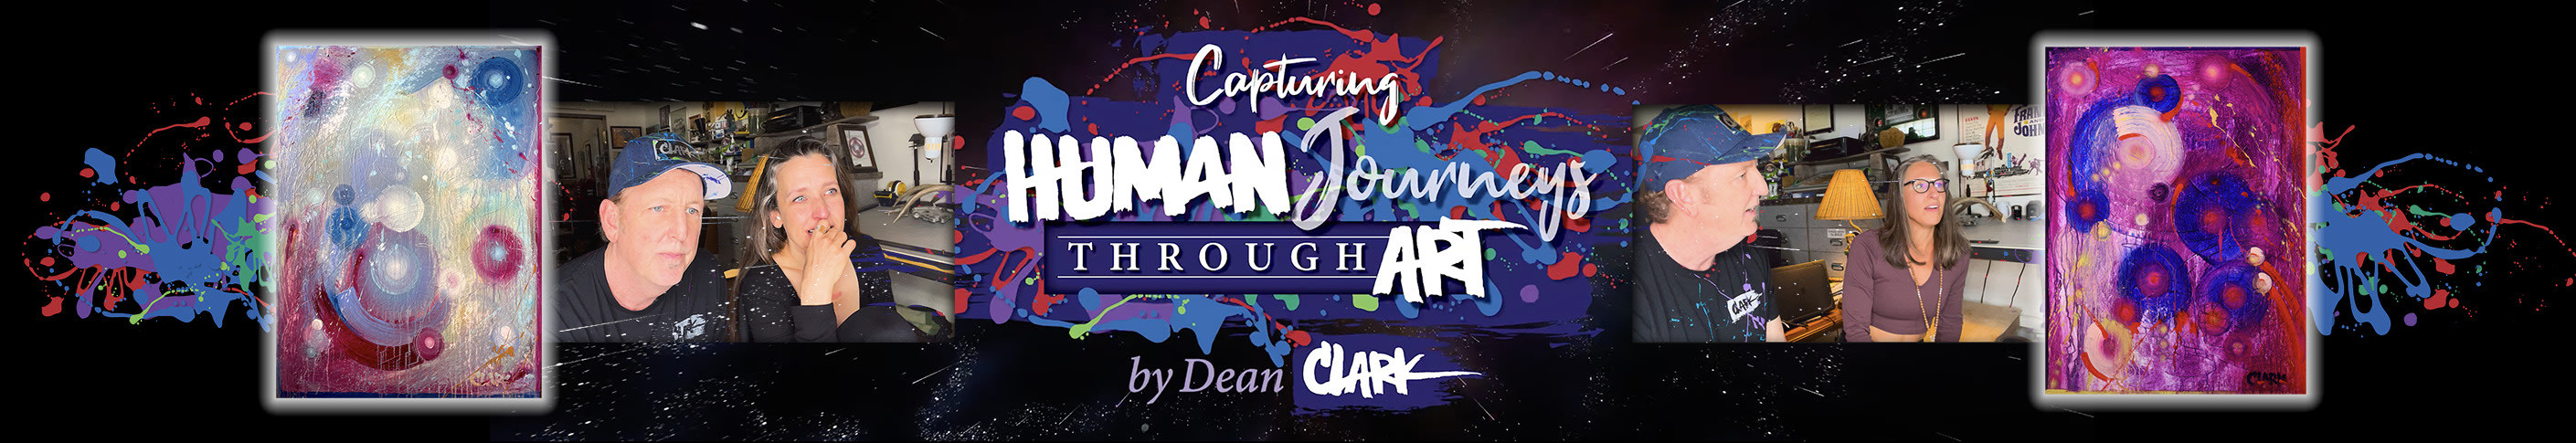 
        <div class='title'>
          human journeys, abstract art, 
        </div>
       
        <div class='description'>
          Capturing Human Journeys Through Art Banner
        </div>
      